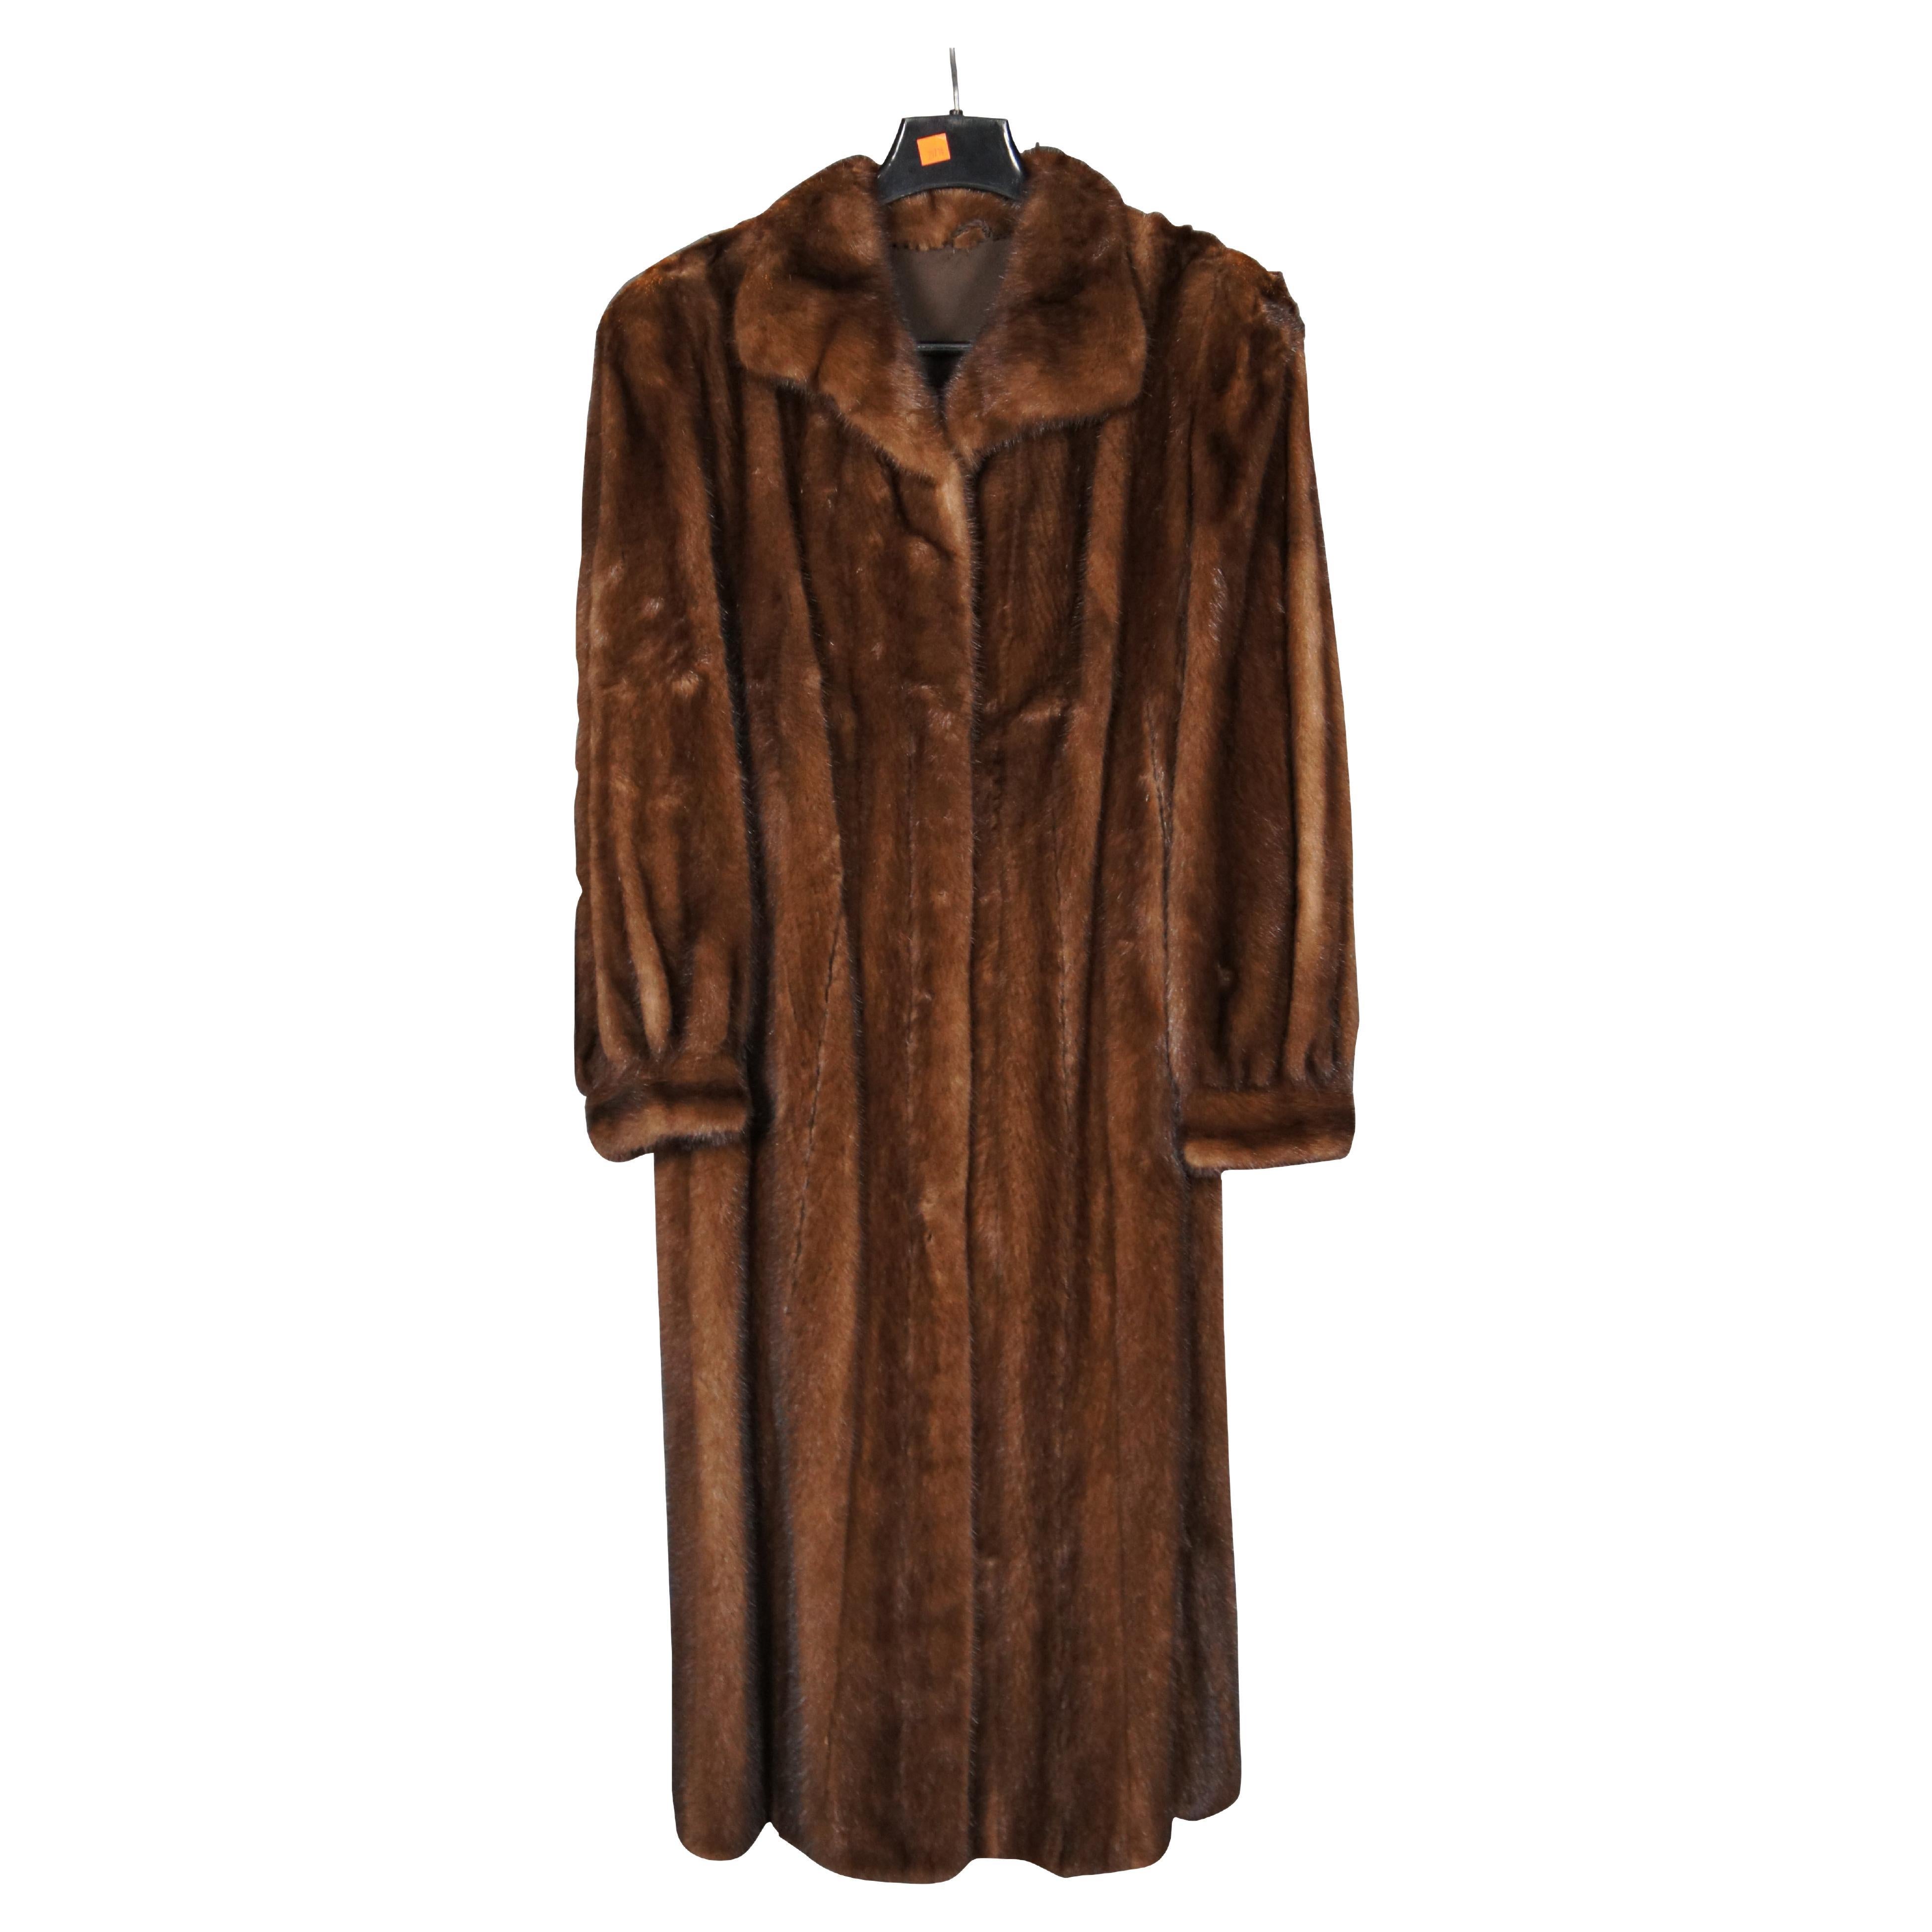 Vintage Medium Brown Full Length Mink Fur Coat Womens Jacket 48" (manteau de fourrure de vison)